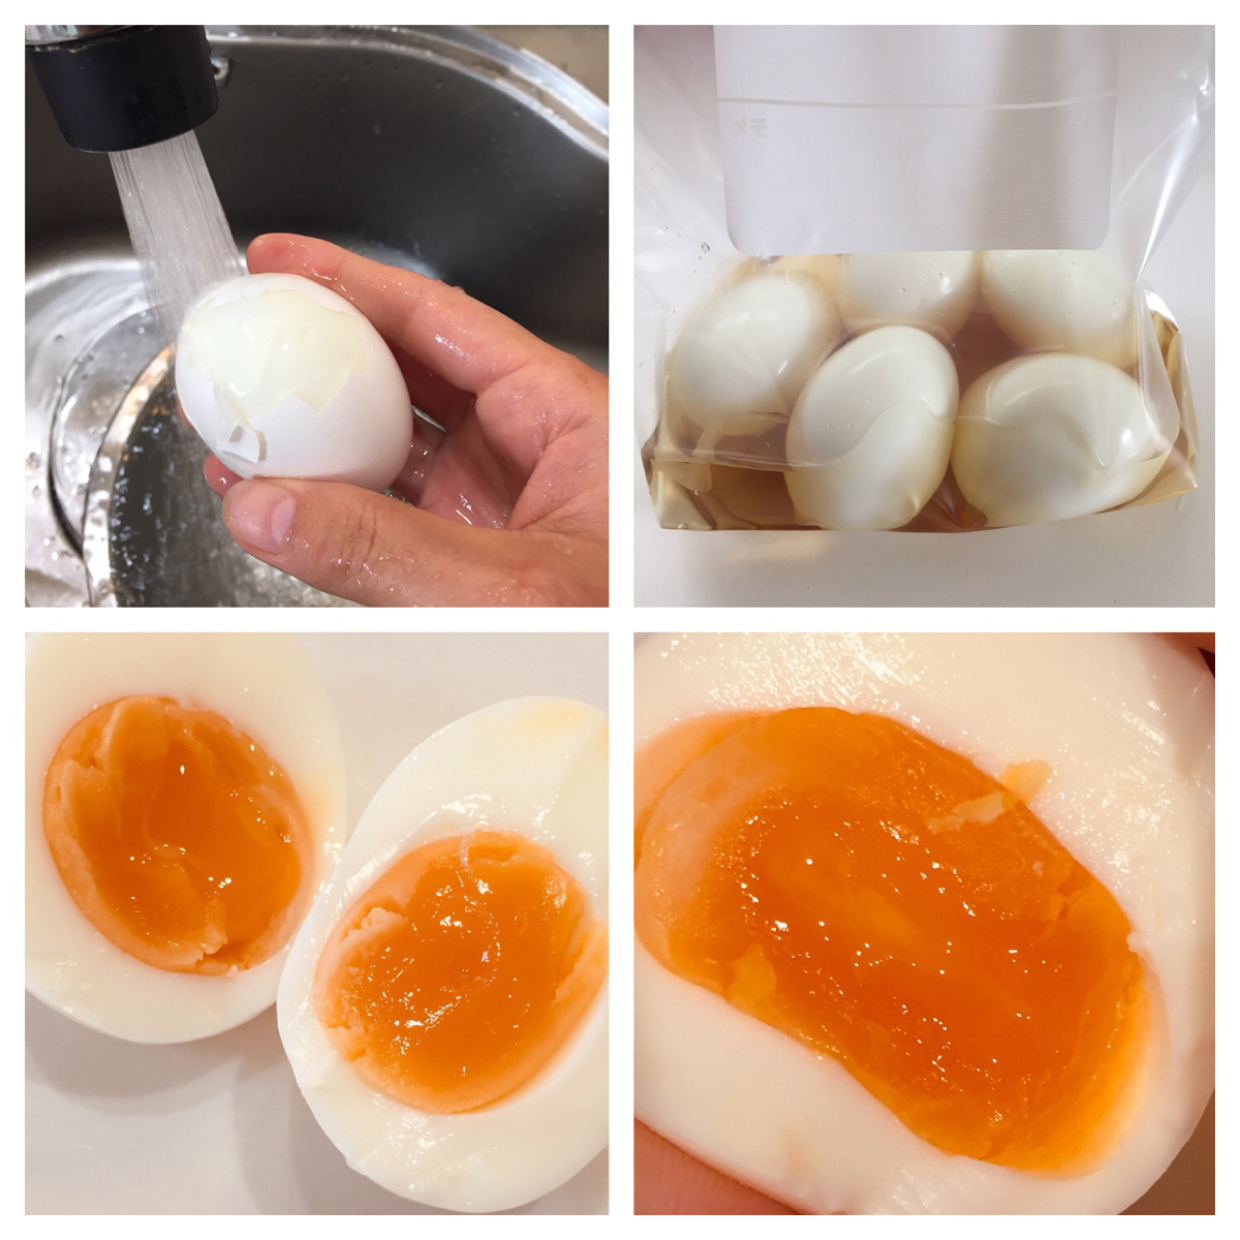  とろっとろでおいしい味付け卵の作り方！白い味たまにする方法って……？ 